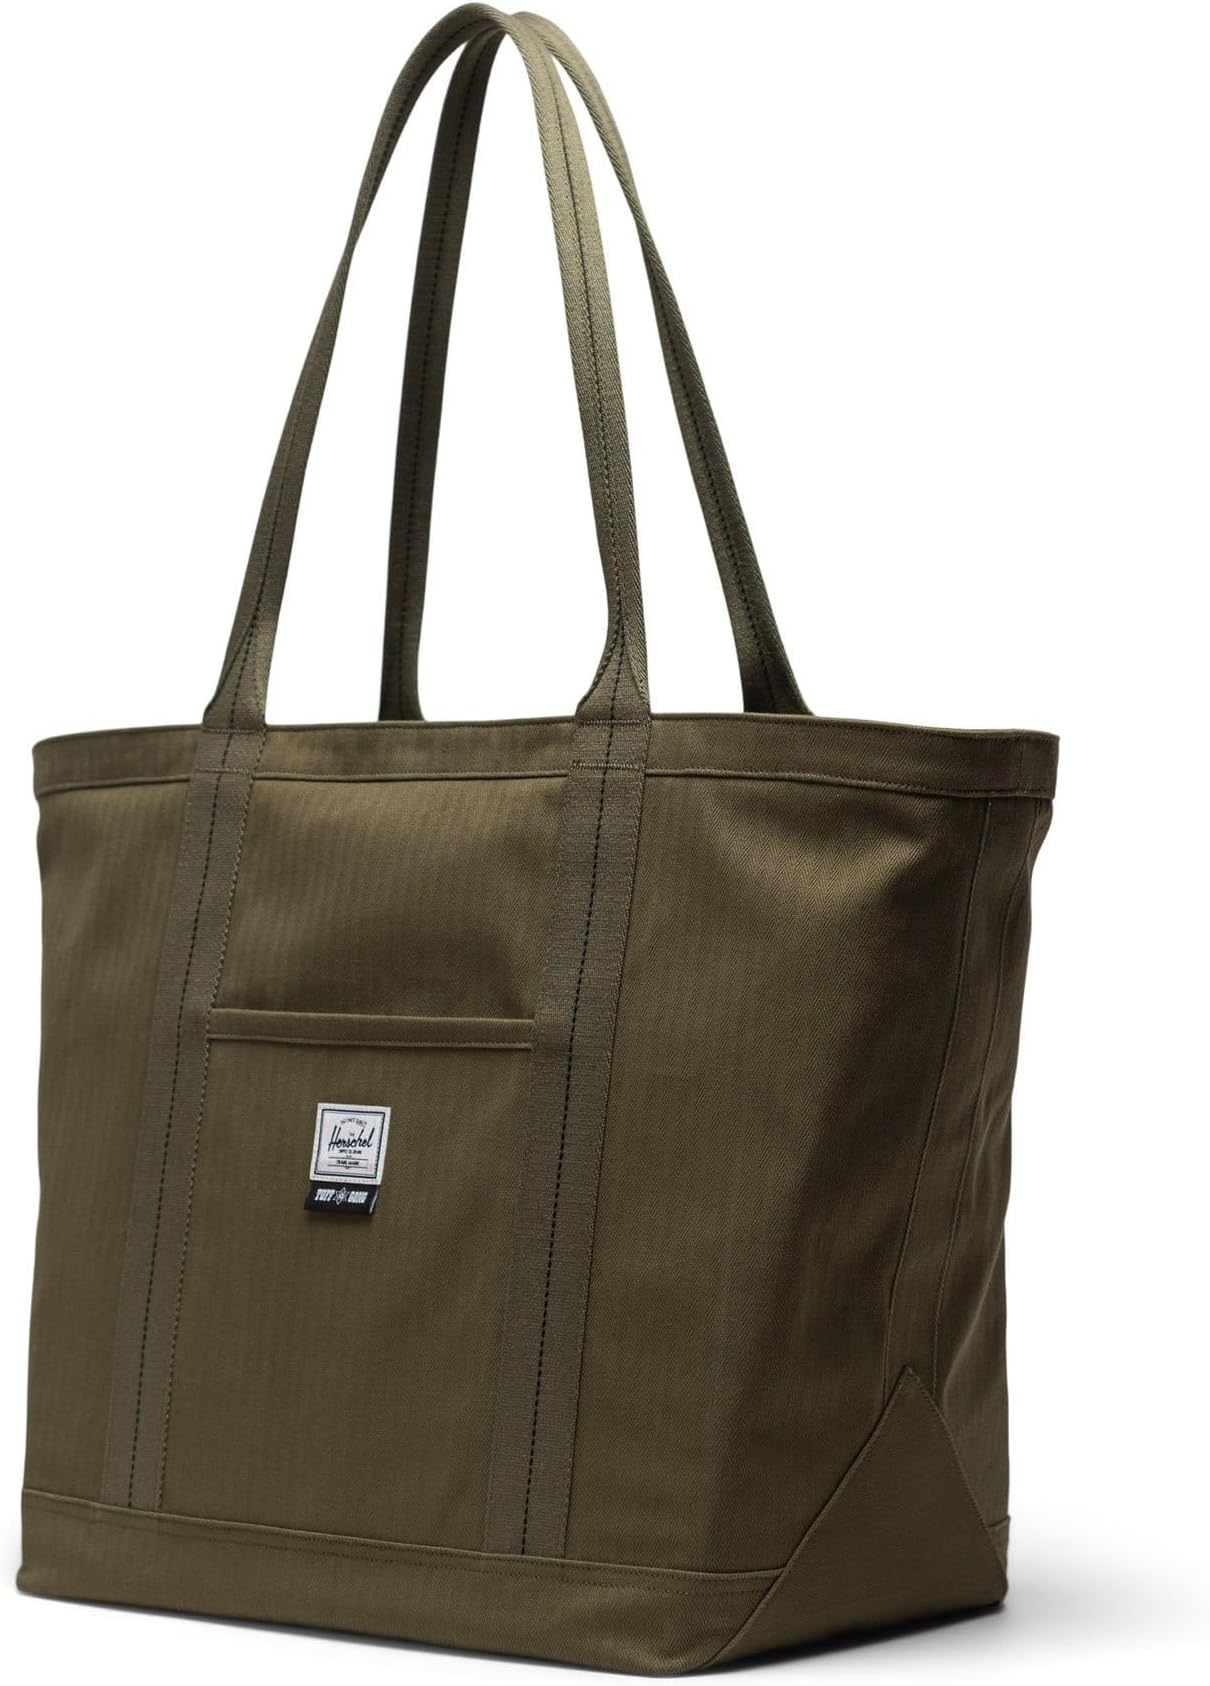 рюкзак retreat backpack herschel supply co цвет ivy green Бэмфилд Мид Herschel Supply Co., цвет Ivy Green